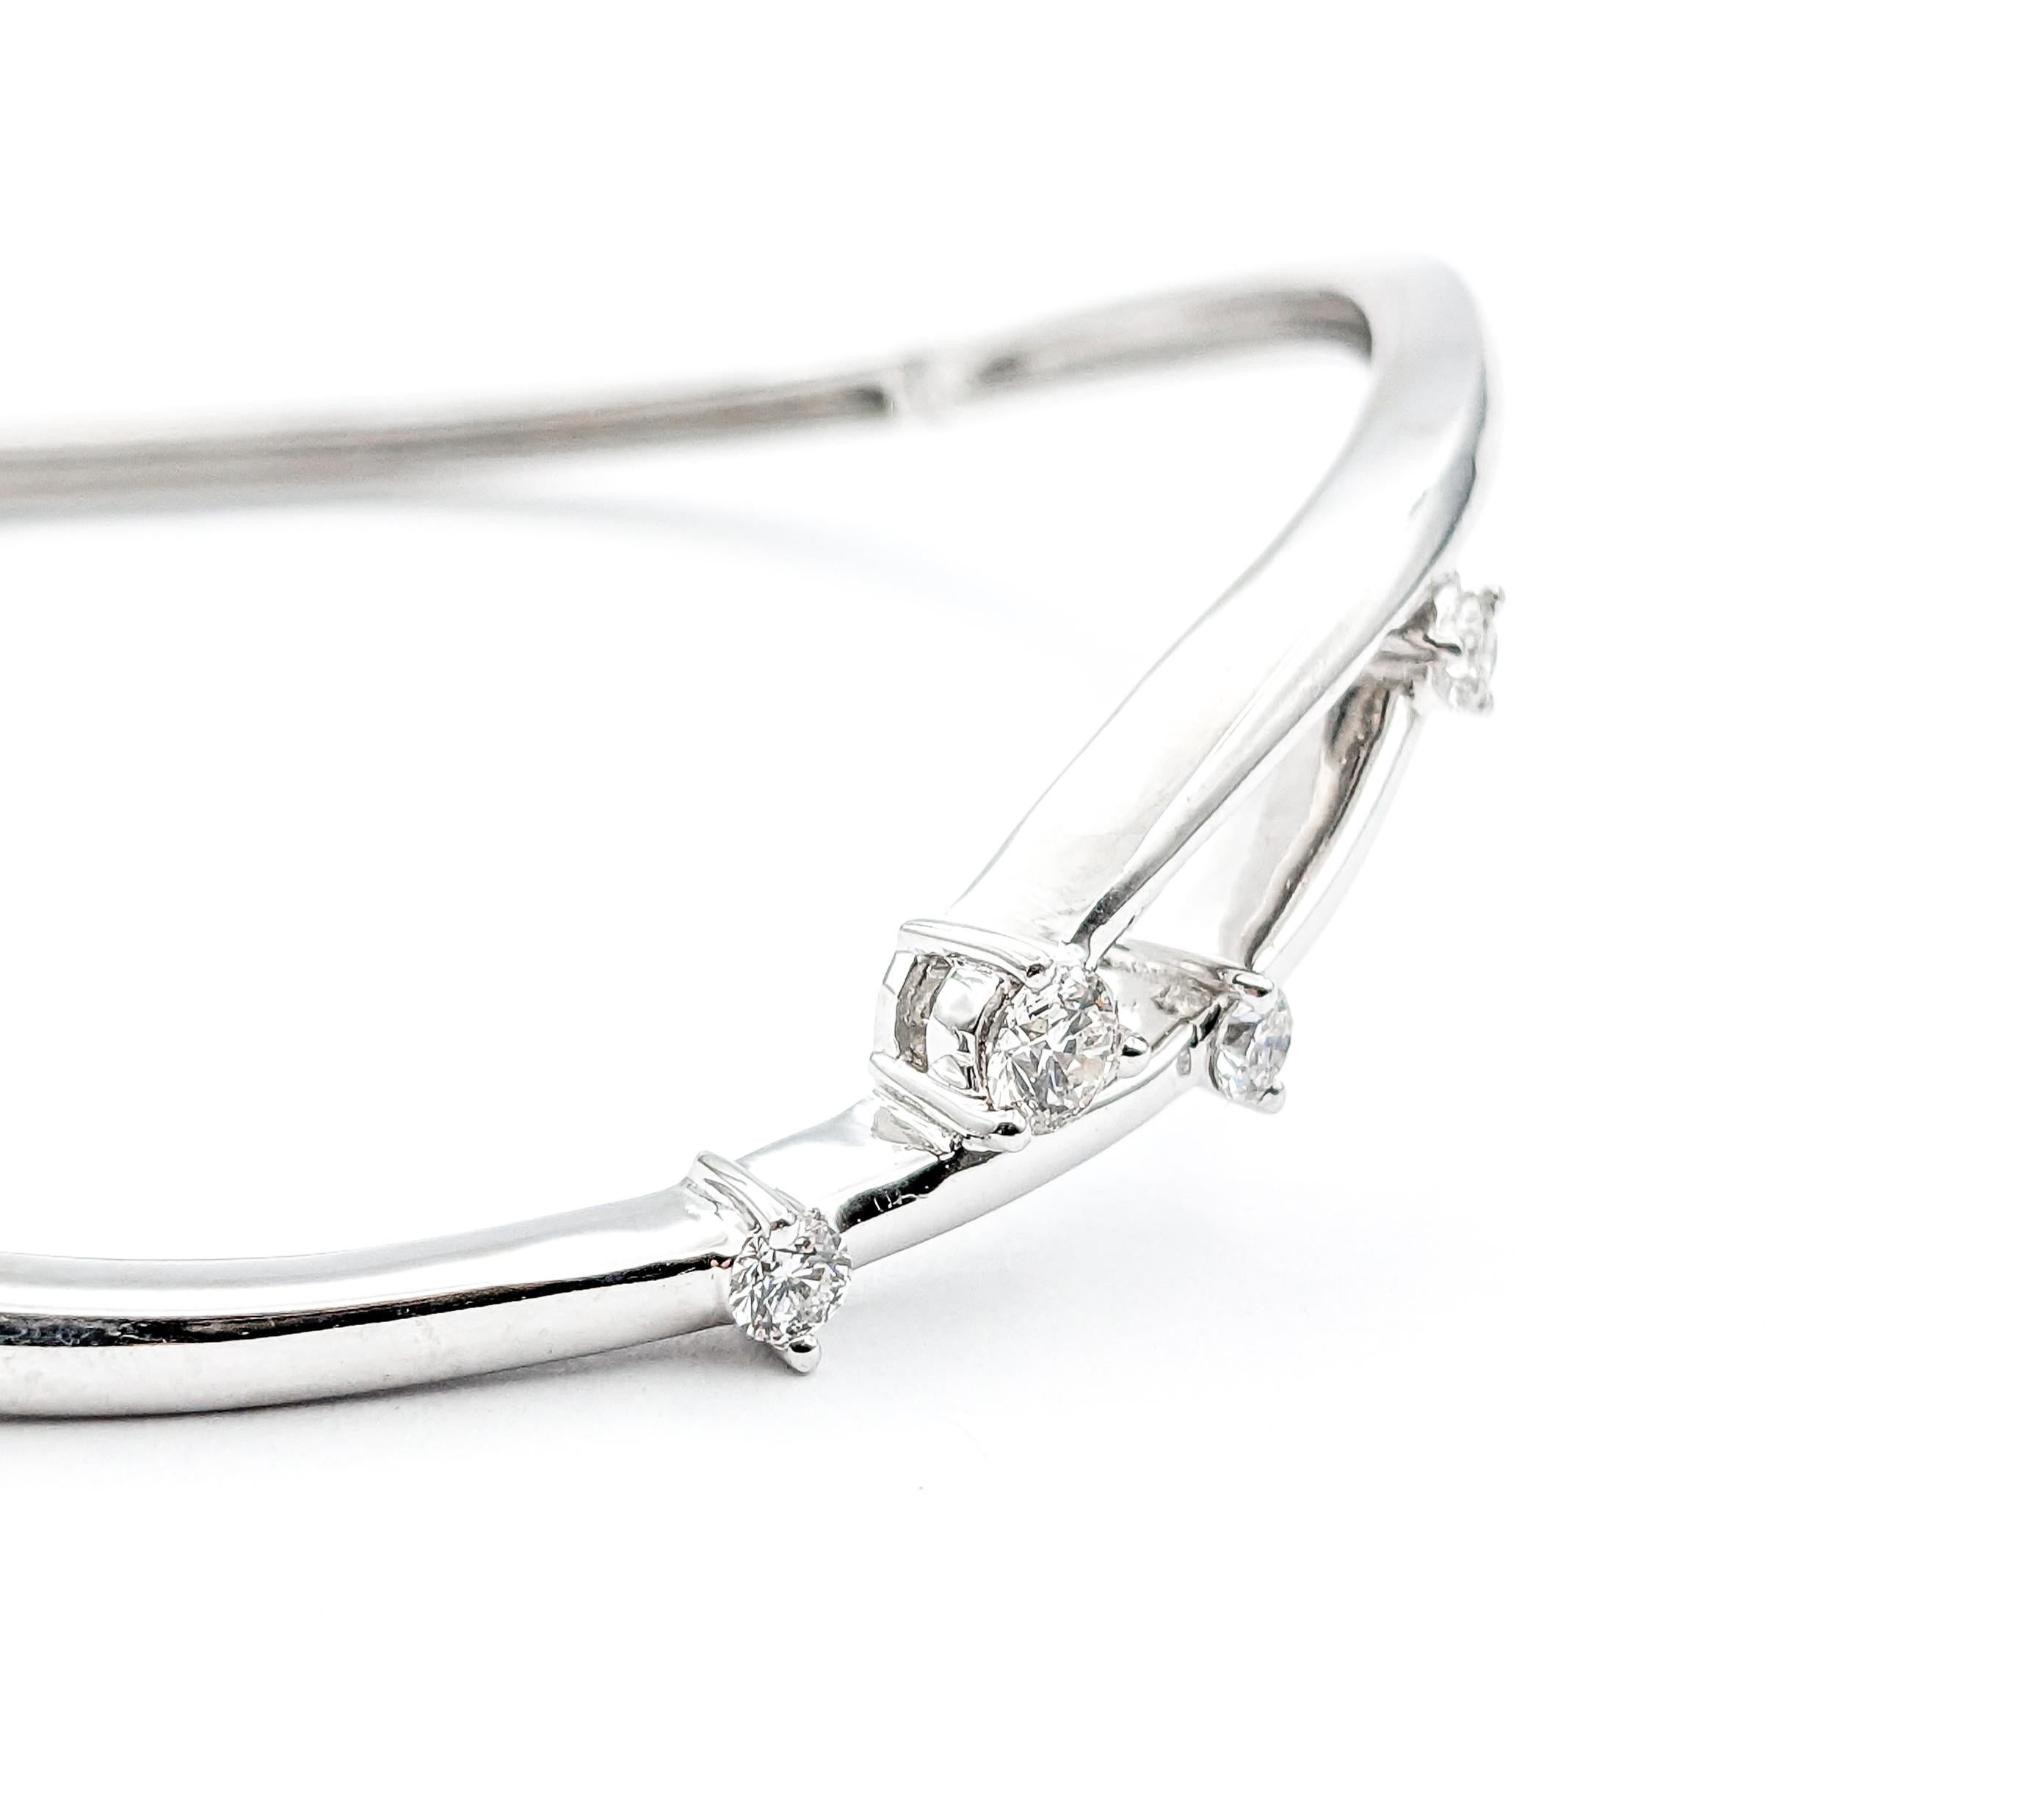 Bracelet à charnière en or blanc et diamants


Whiting est un superbe bracelet à charnière, élégamment réalisé en or blanc 14 carats. Ce bracelet exquis est orné de 0,25ctw de diamants qui brillent avec une clarté I et une teinte blanche presque